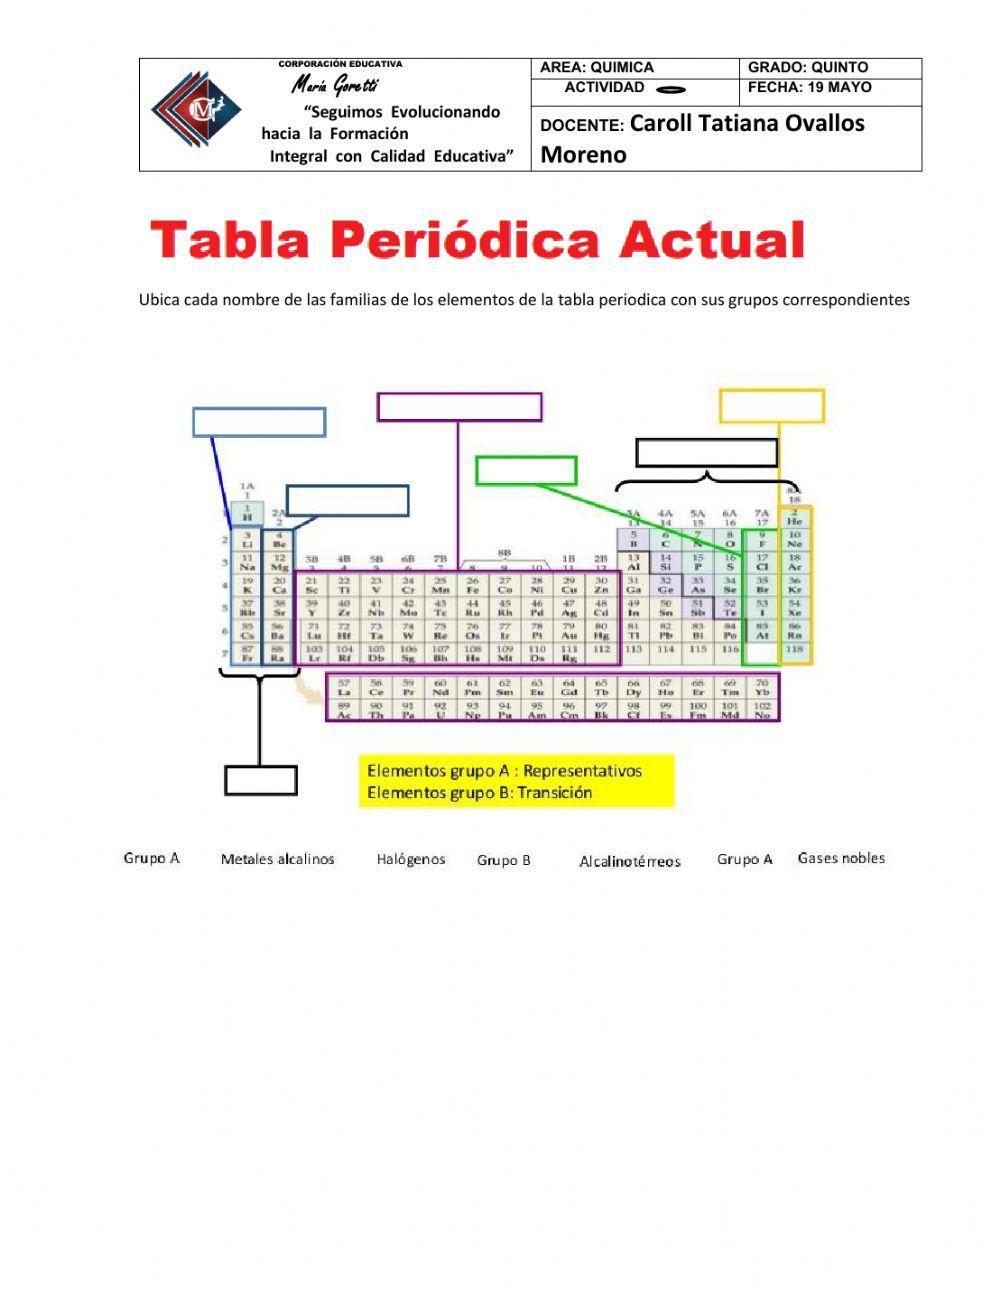 La tabla periodica actual